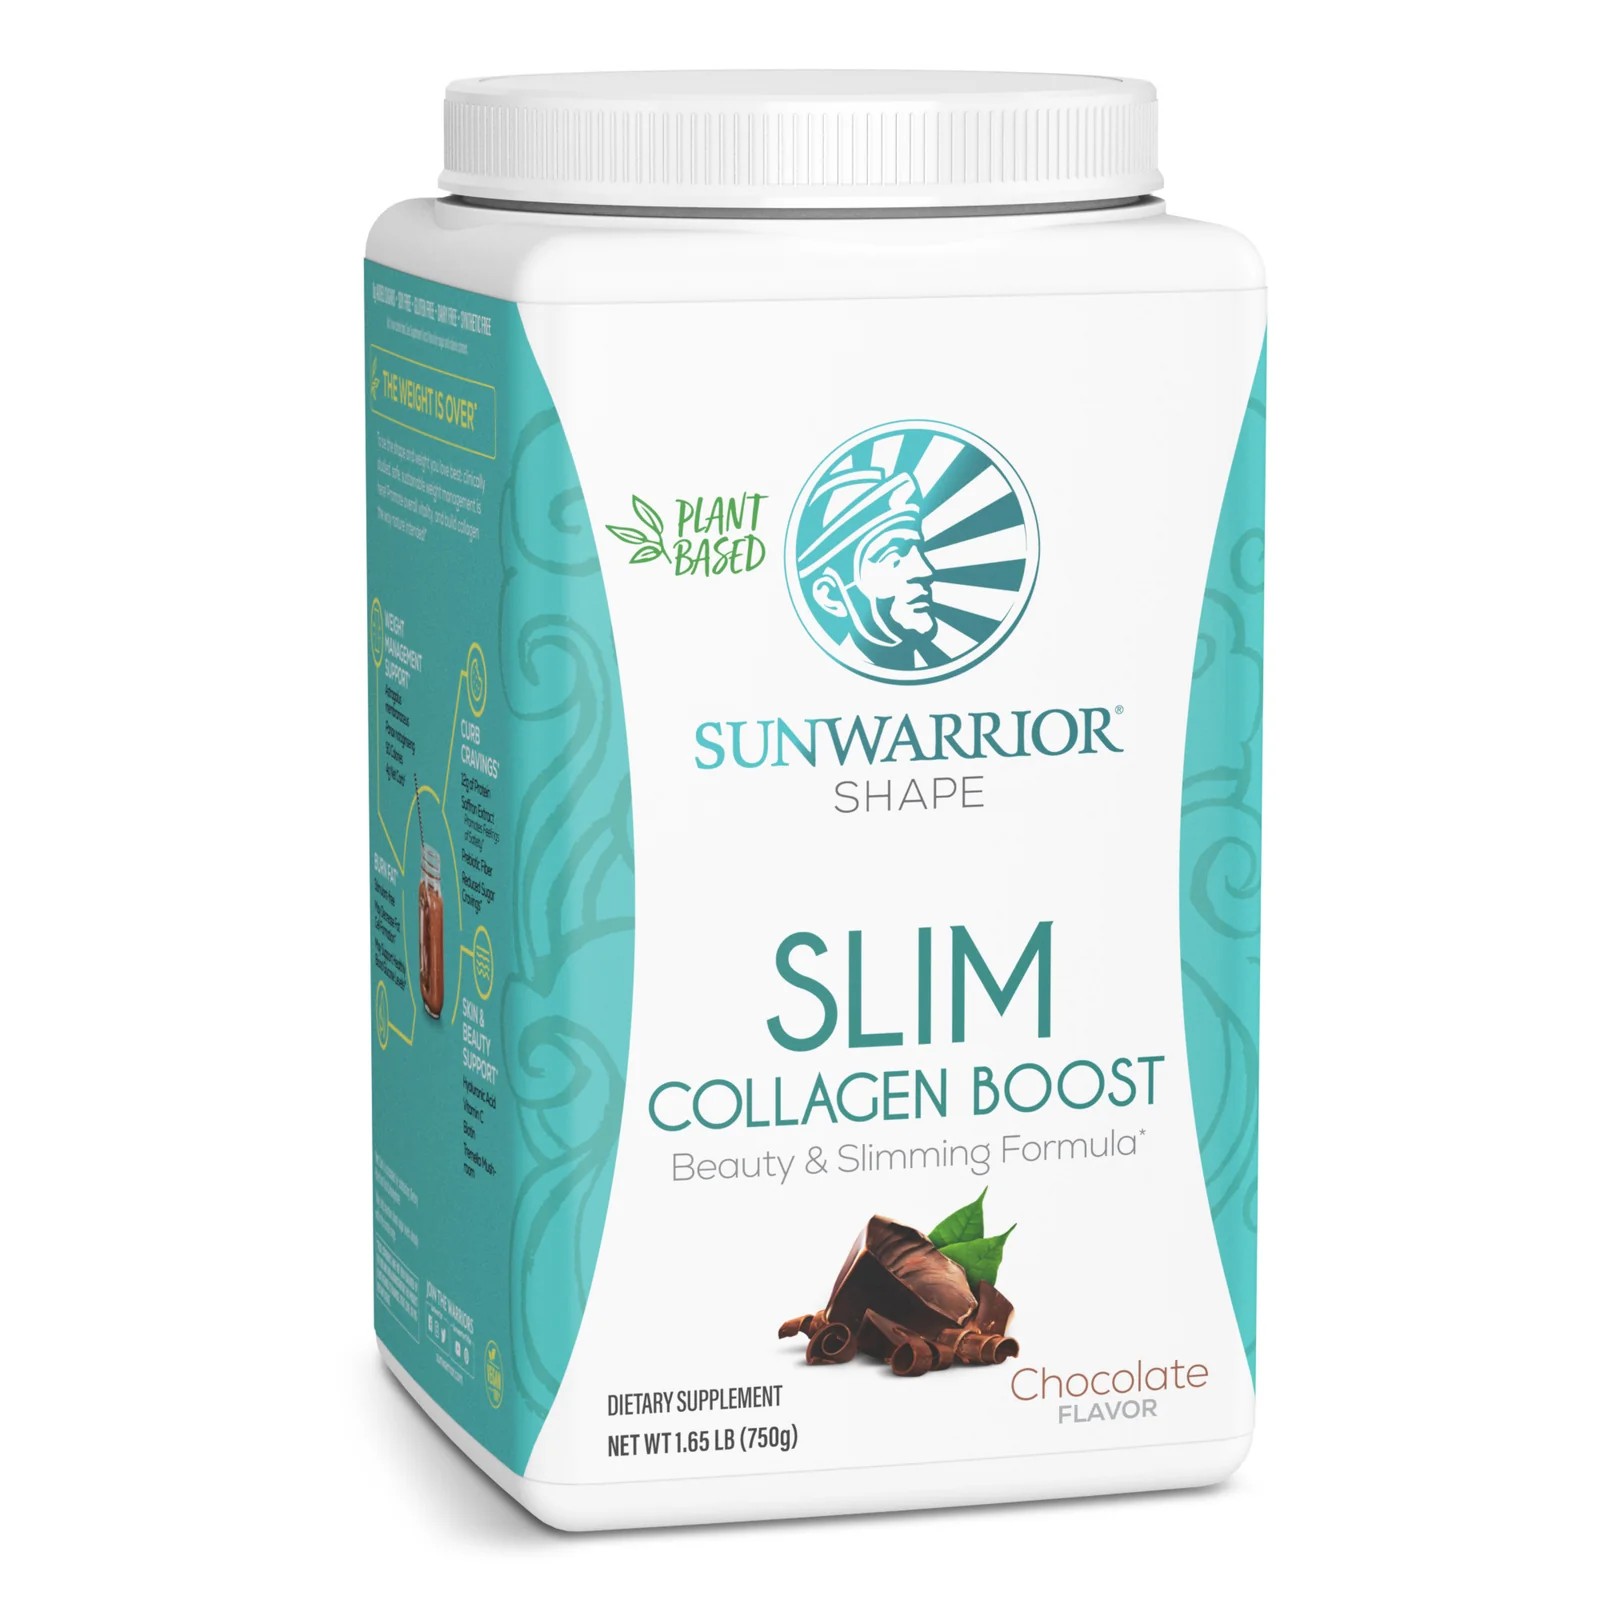 Sunwarrior Slim Collagen Boost 2